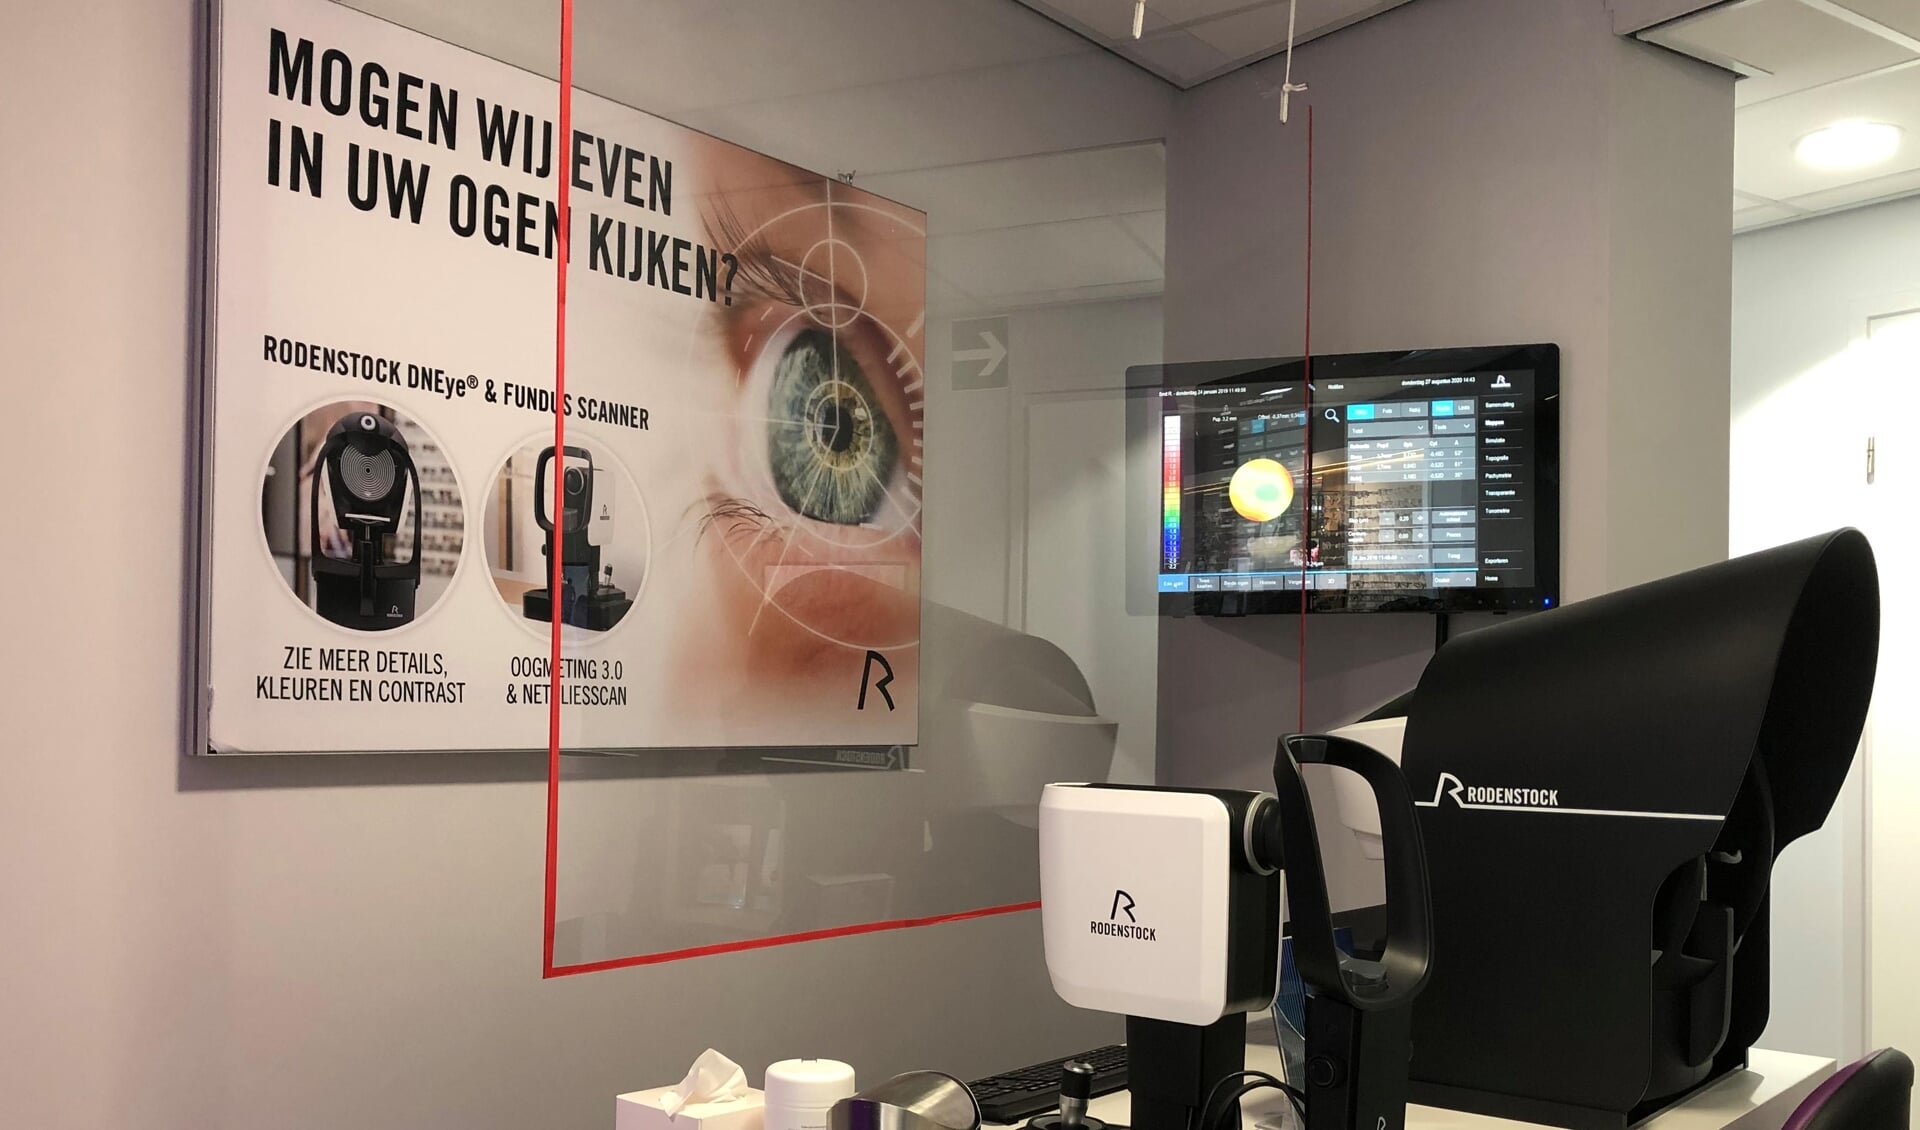 De apparatuur waarmee de biometrische data van de ogen kan worden gemeten. Kom op 18 of 19 
september naar Smit Optiek voor een gratis oogmeting. 